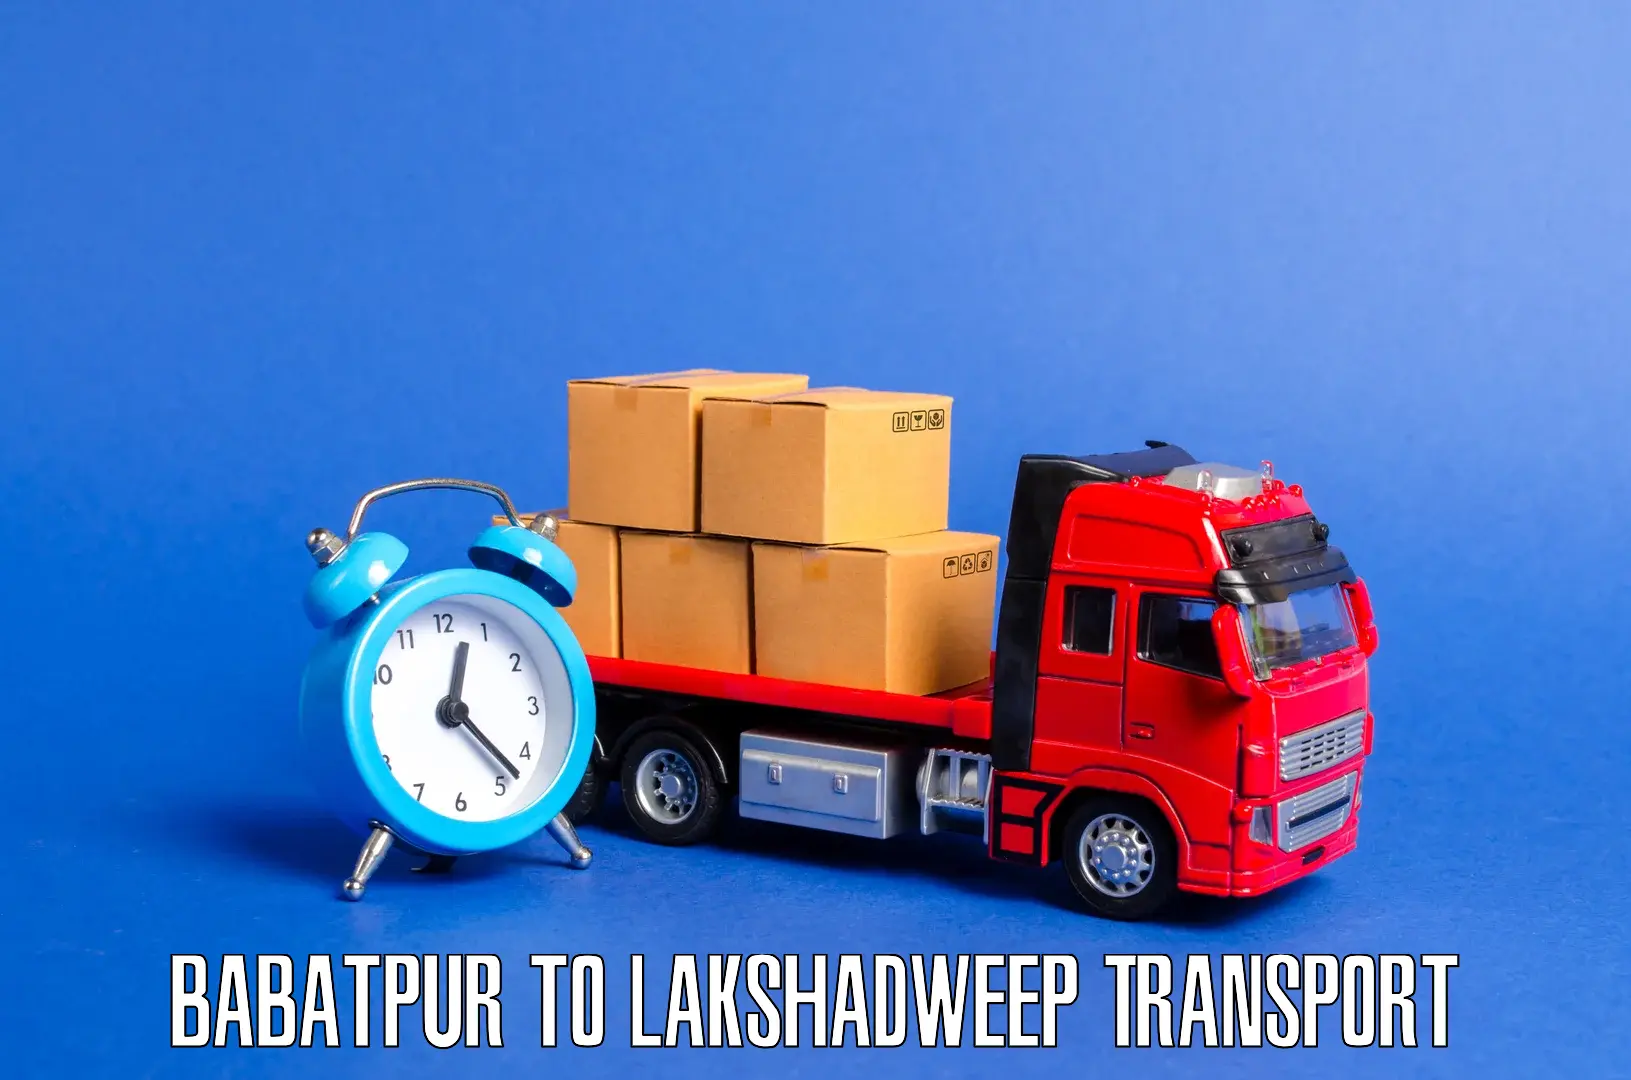 Bike transport service Babatpur to Lakshadweep